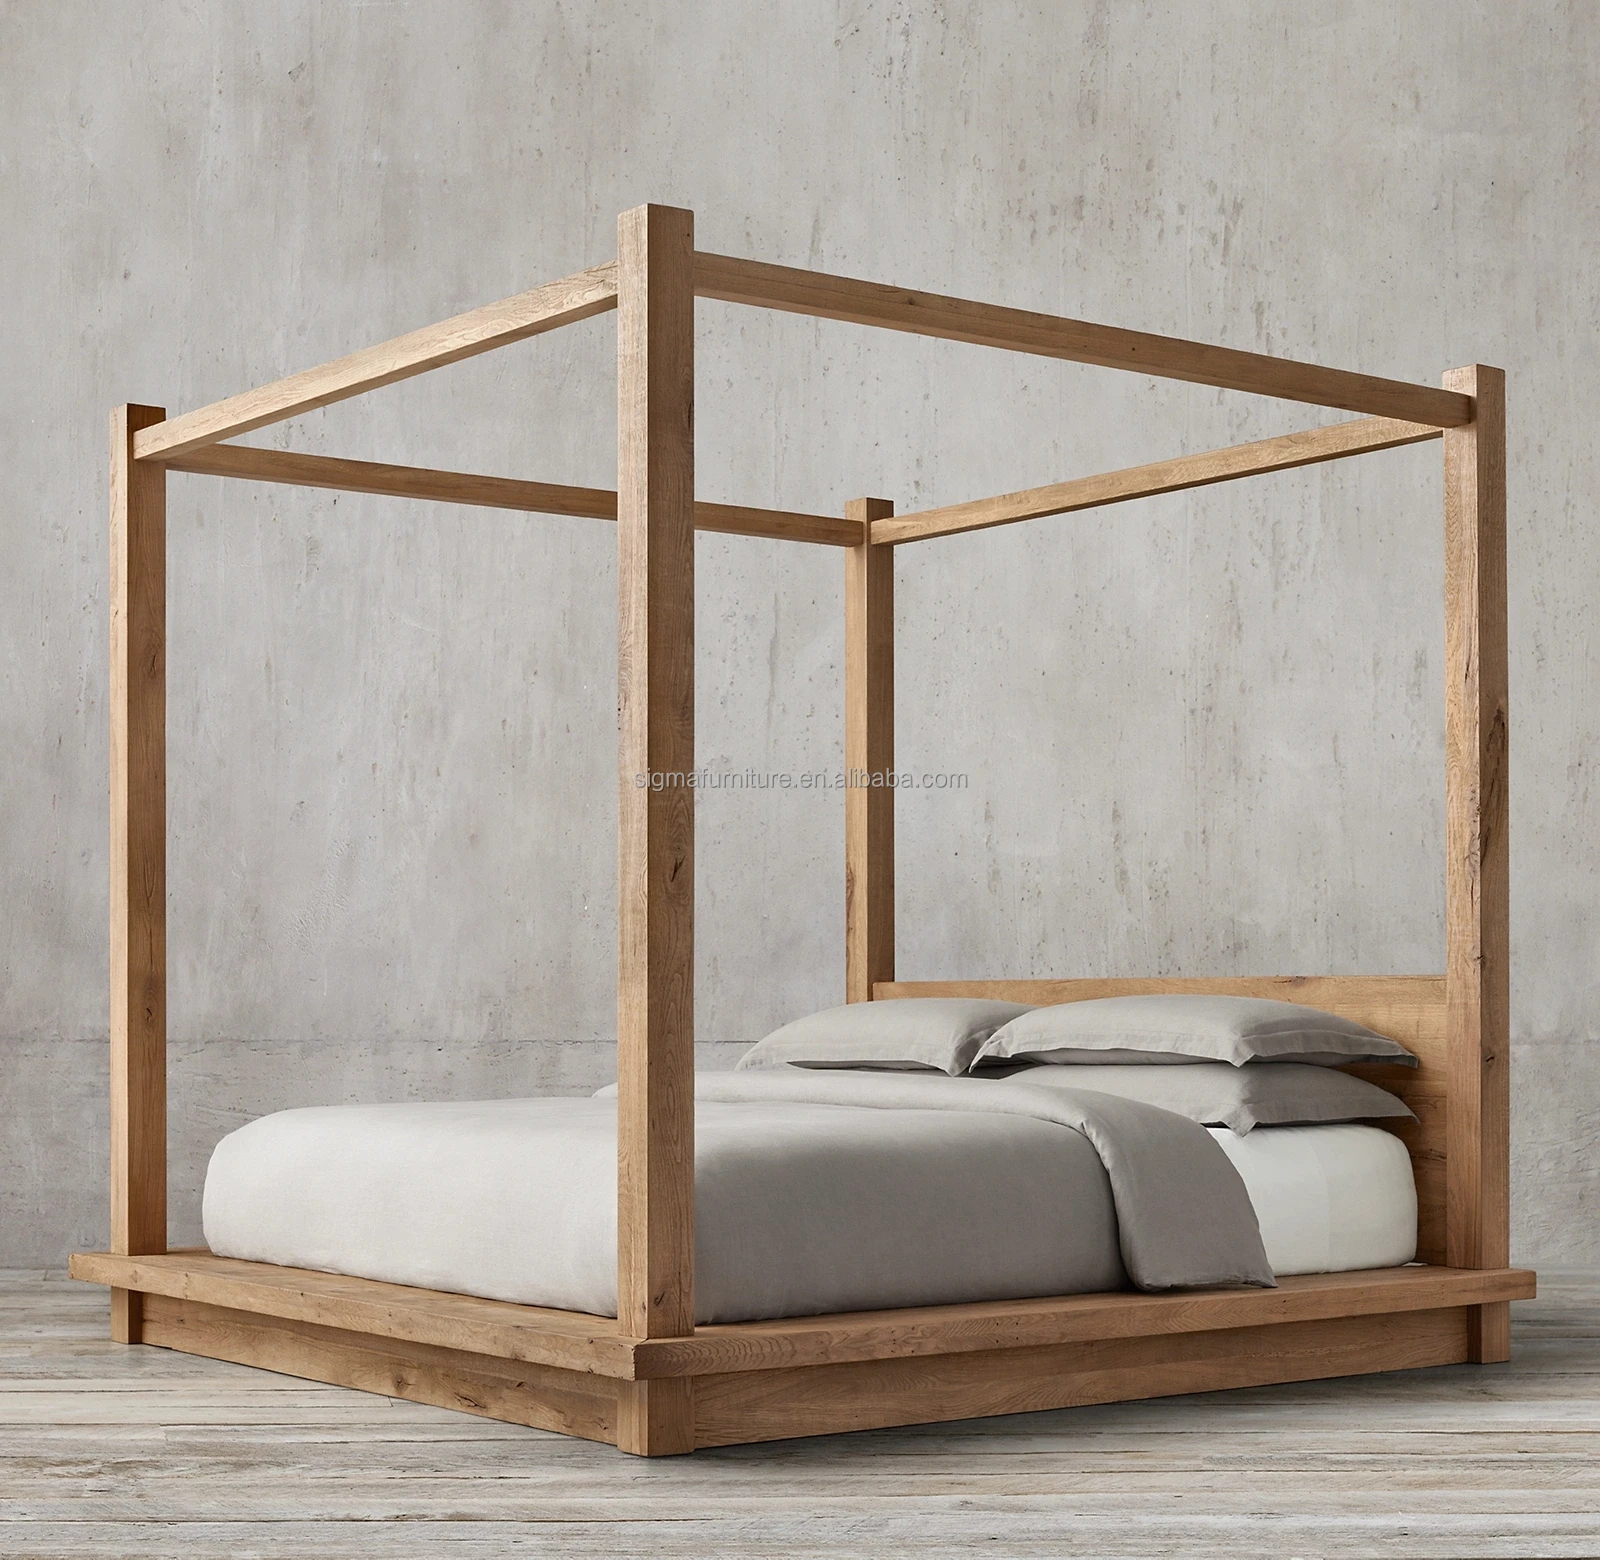 Кровать деревянная с каркасом для балдахина